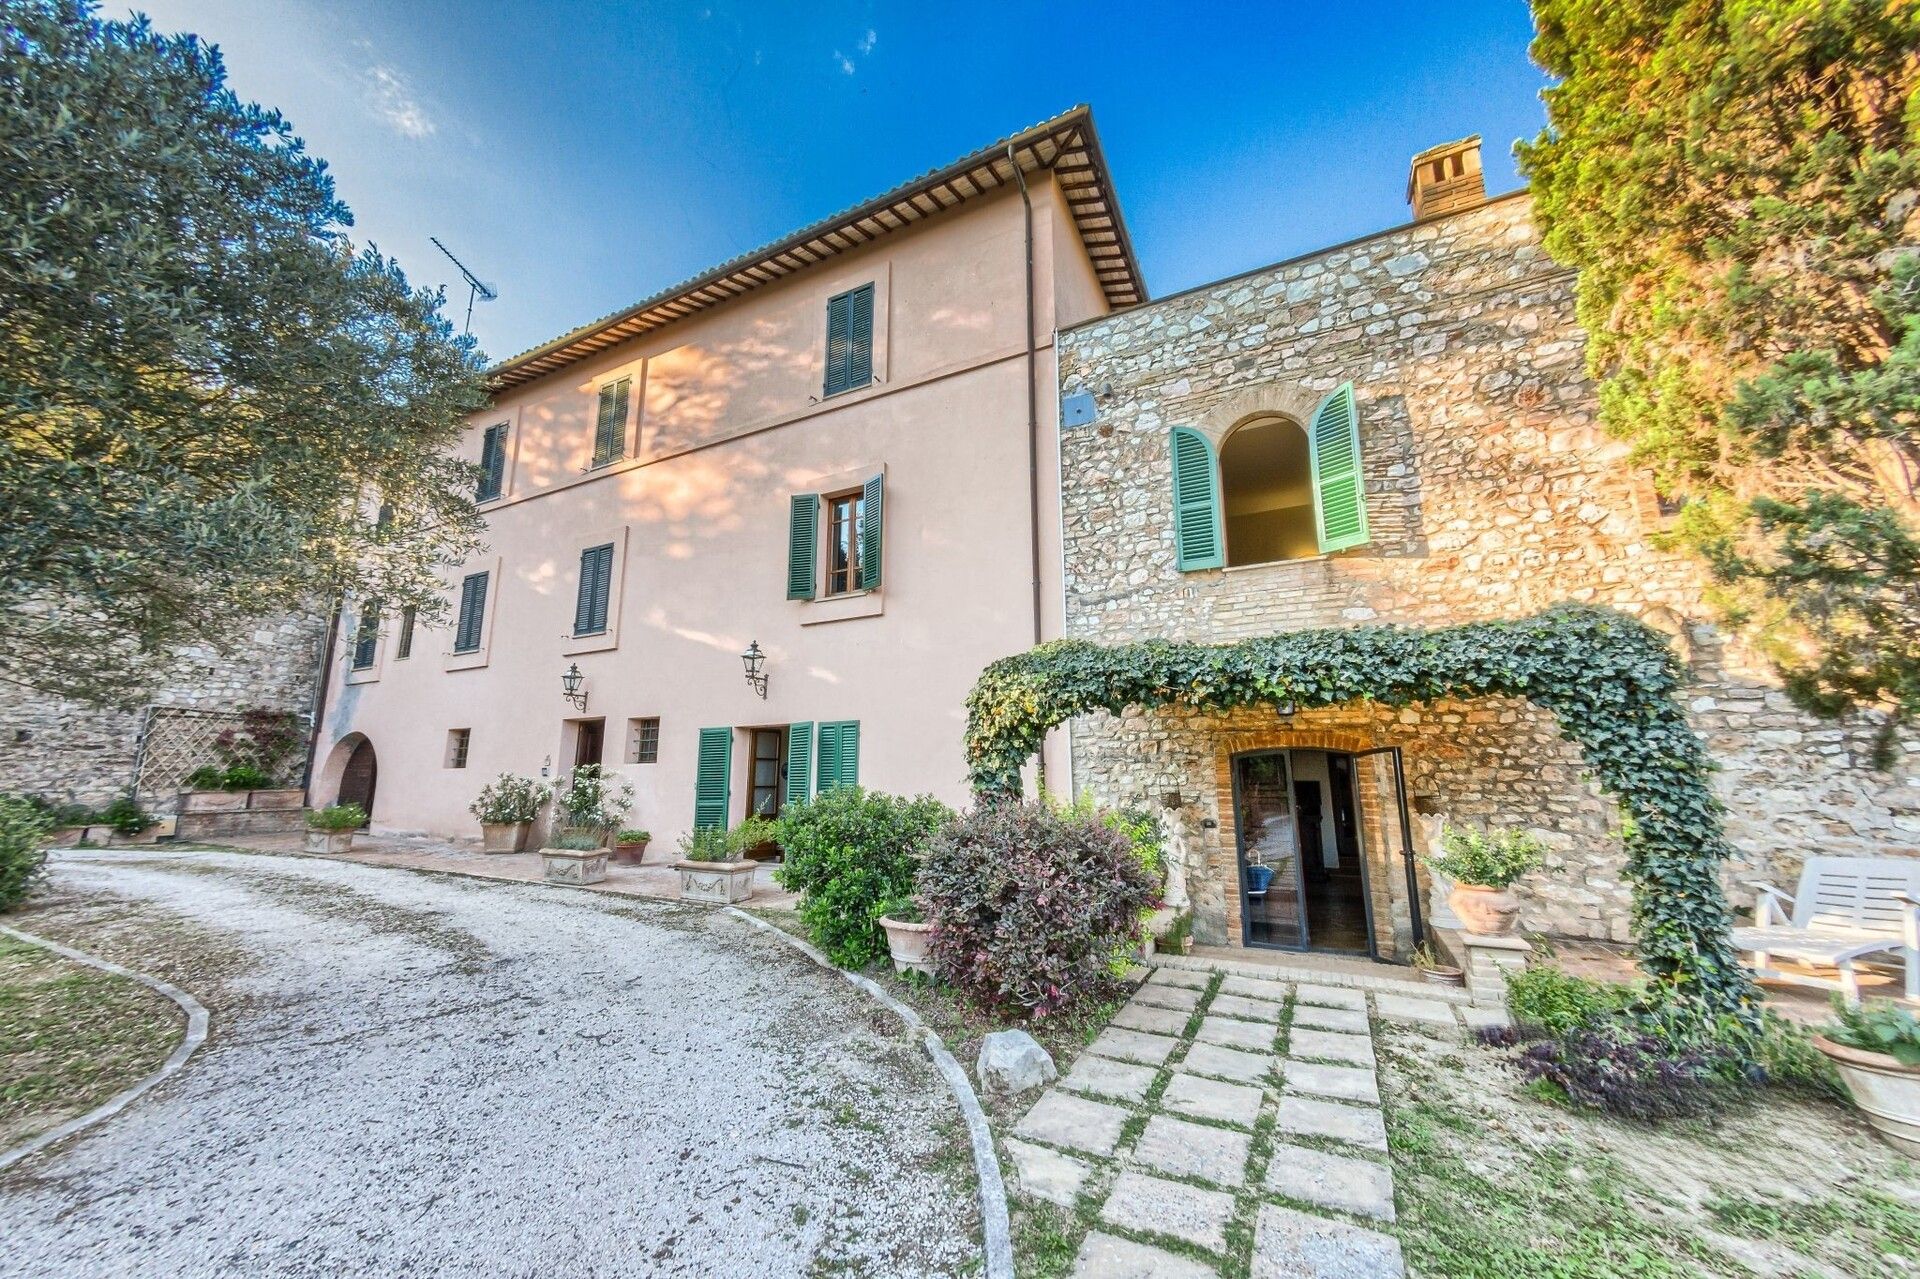 Se vende villa in zona tranquila Spello Umbria